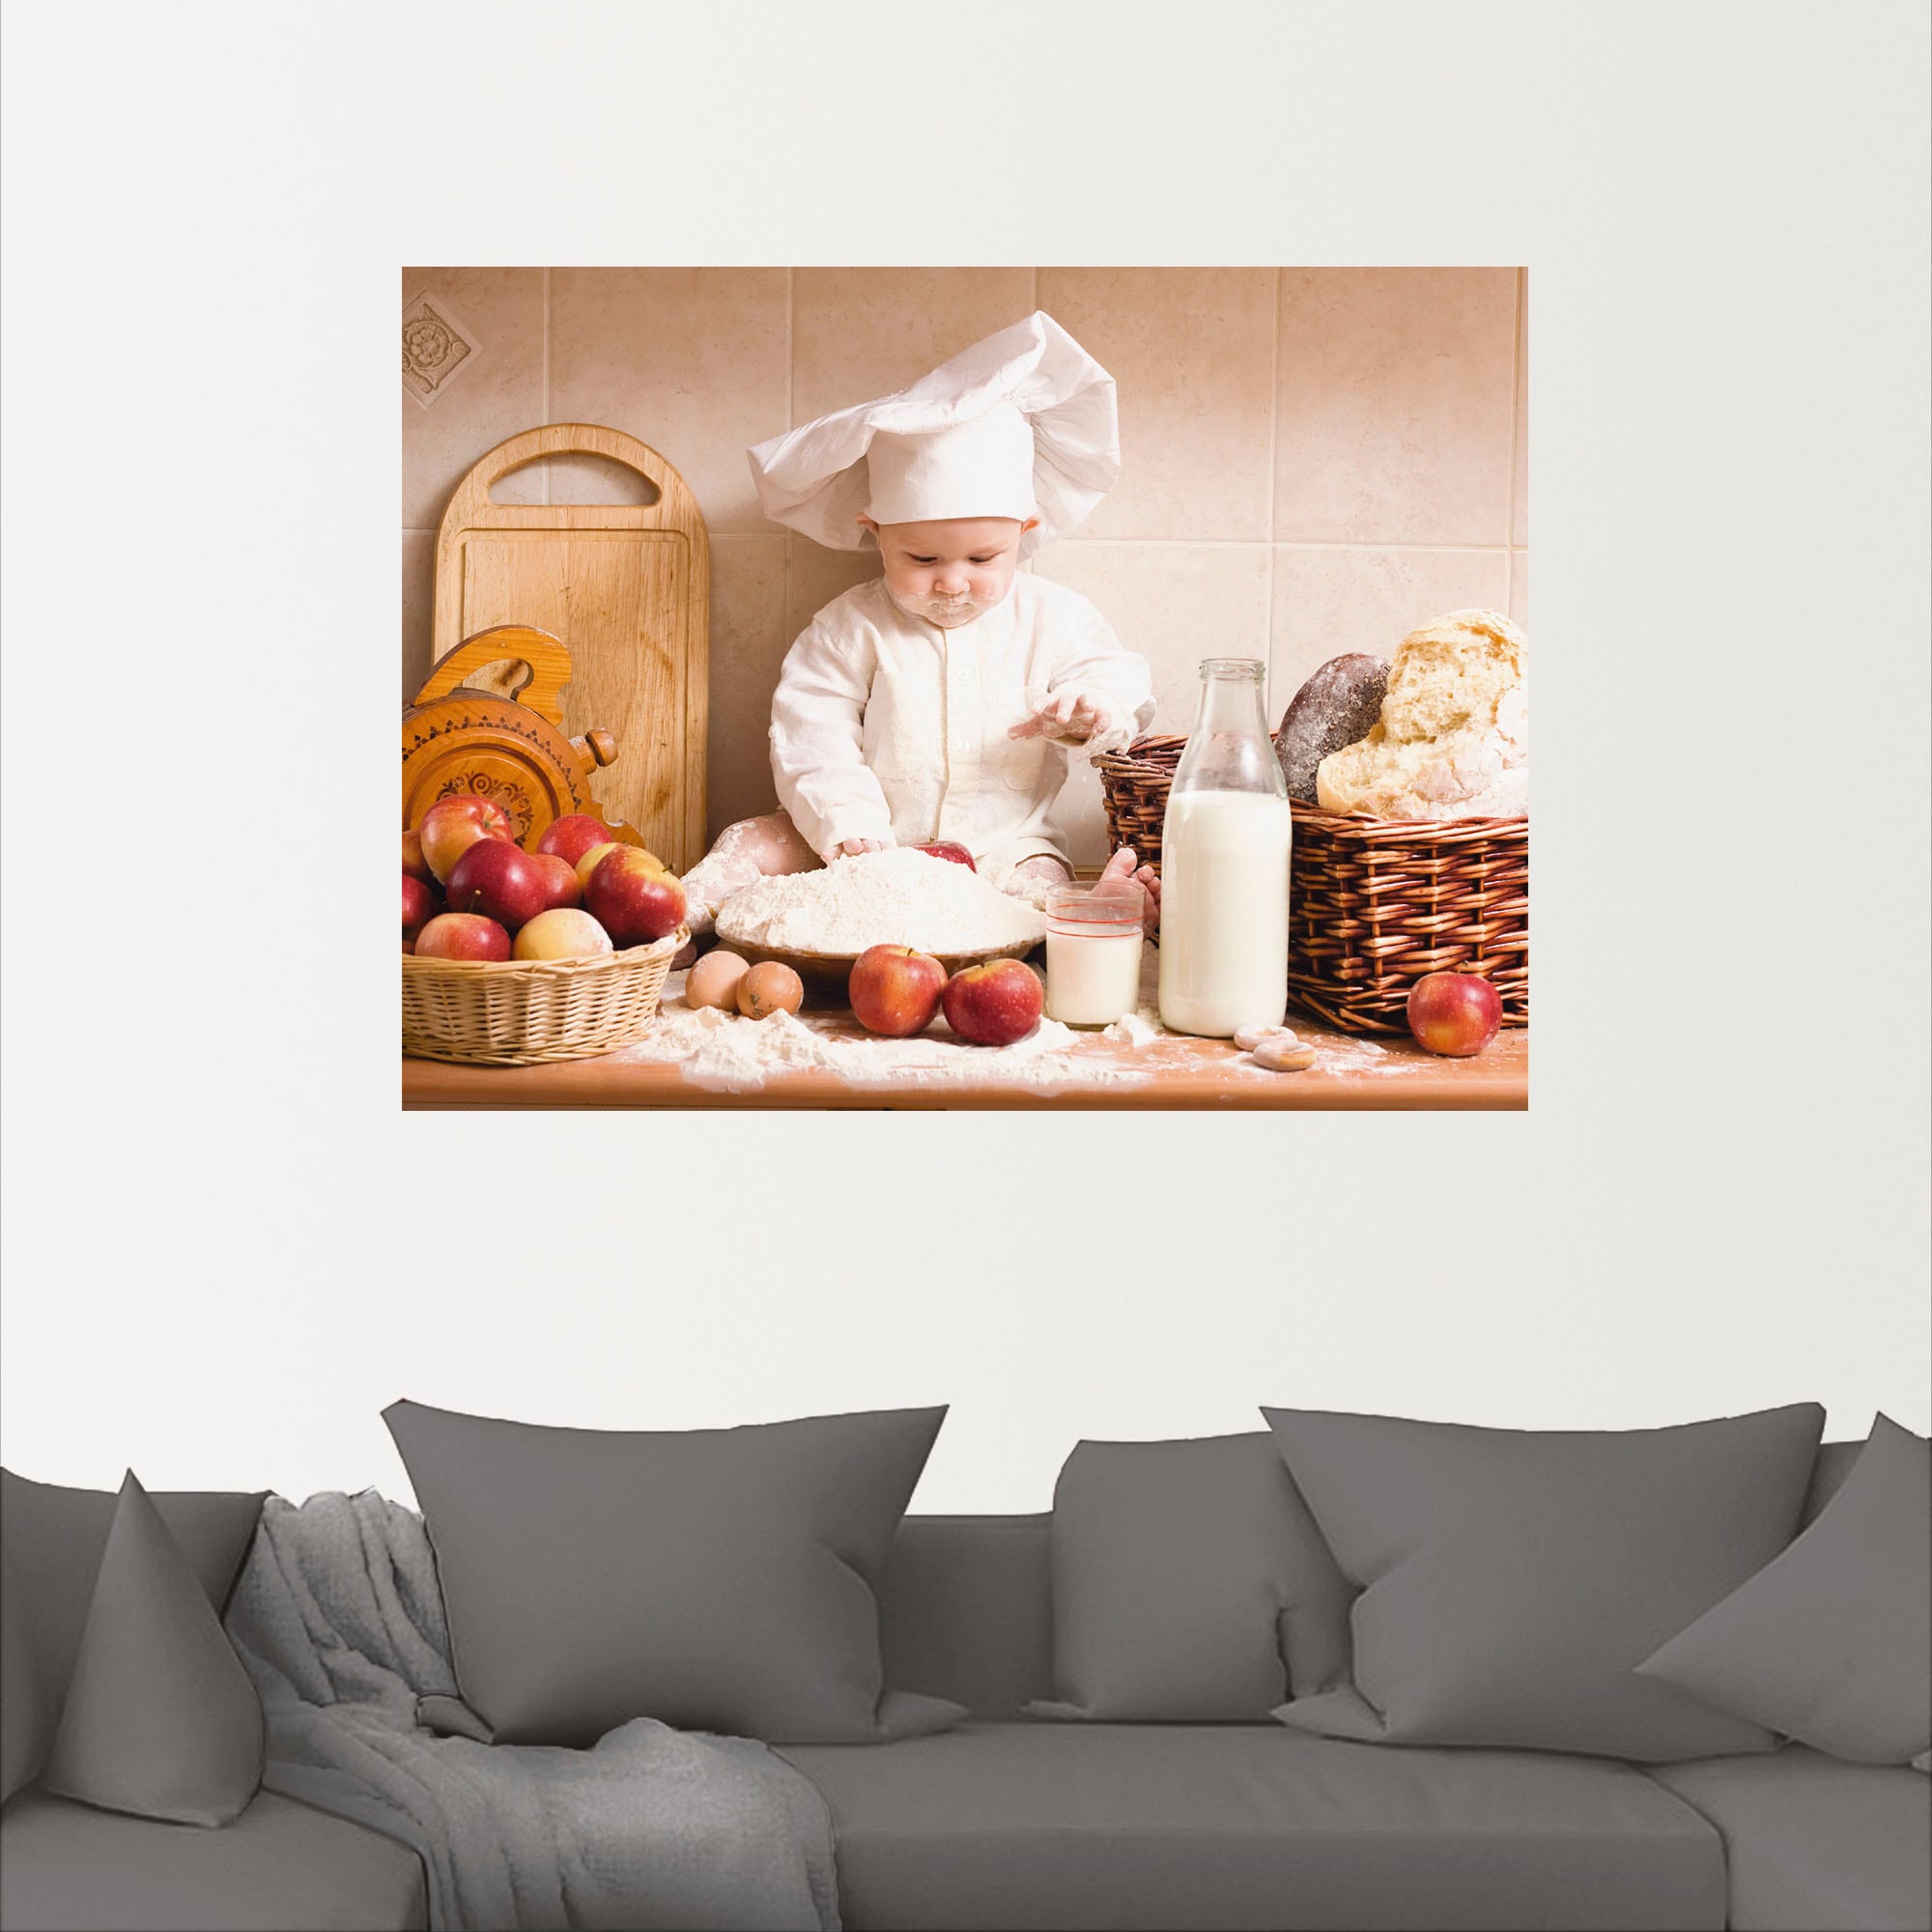 Artland Wandbild »Küche Junge Kind Backen«, Bilder von Kindern, (1 St.), als Alubild, Outdoorbild, Leinwandbild, Poster, Wandaufkleber